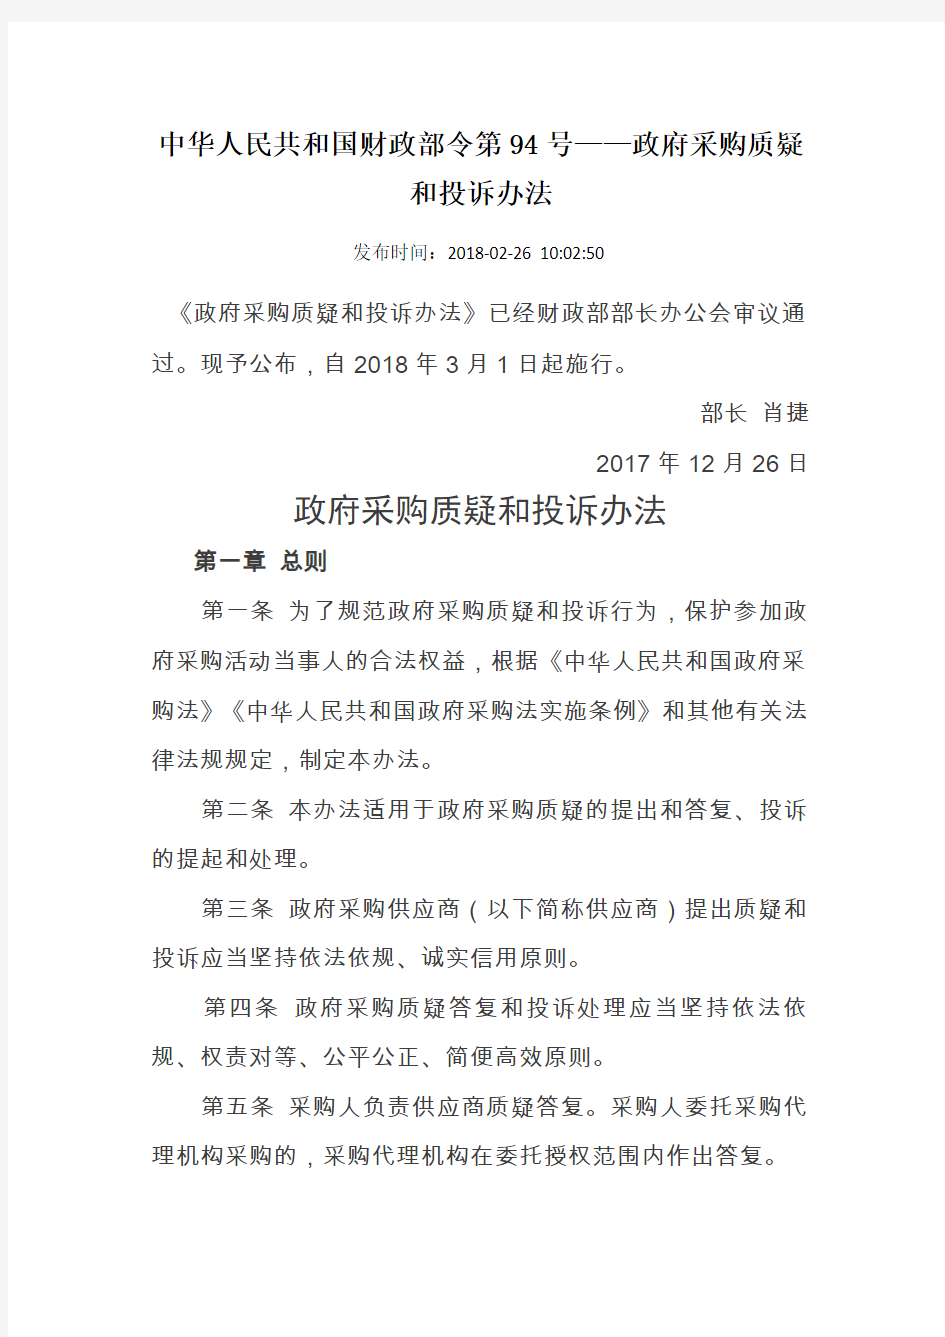 中华人民共和国财政部令第94号——政府采购质疑和投诉办法